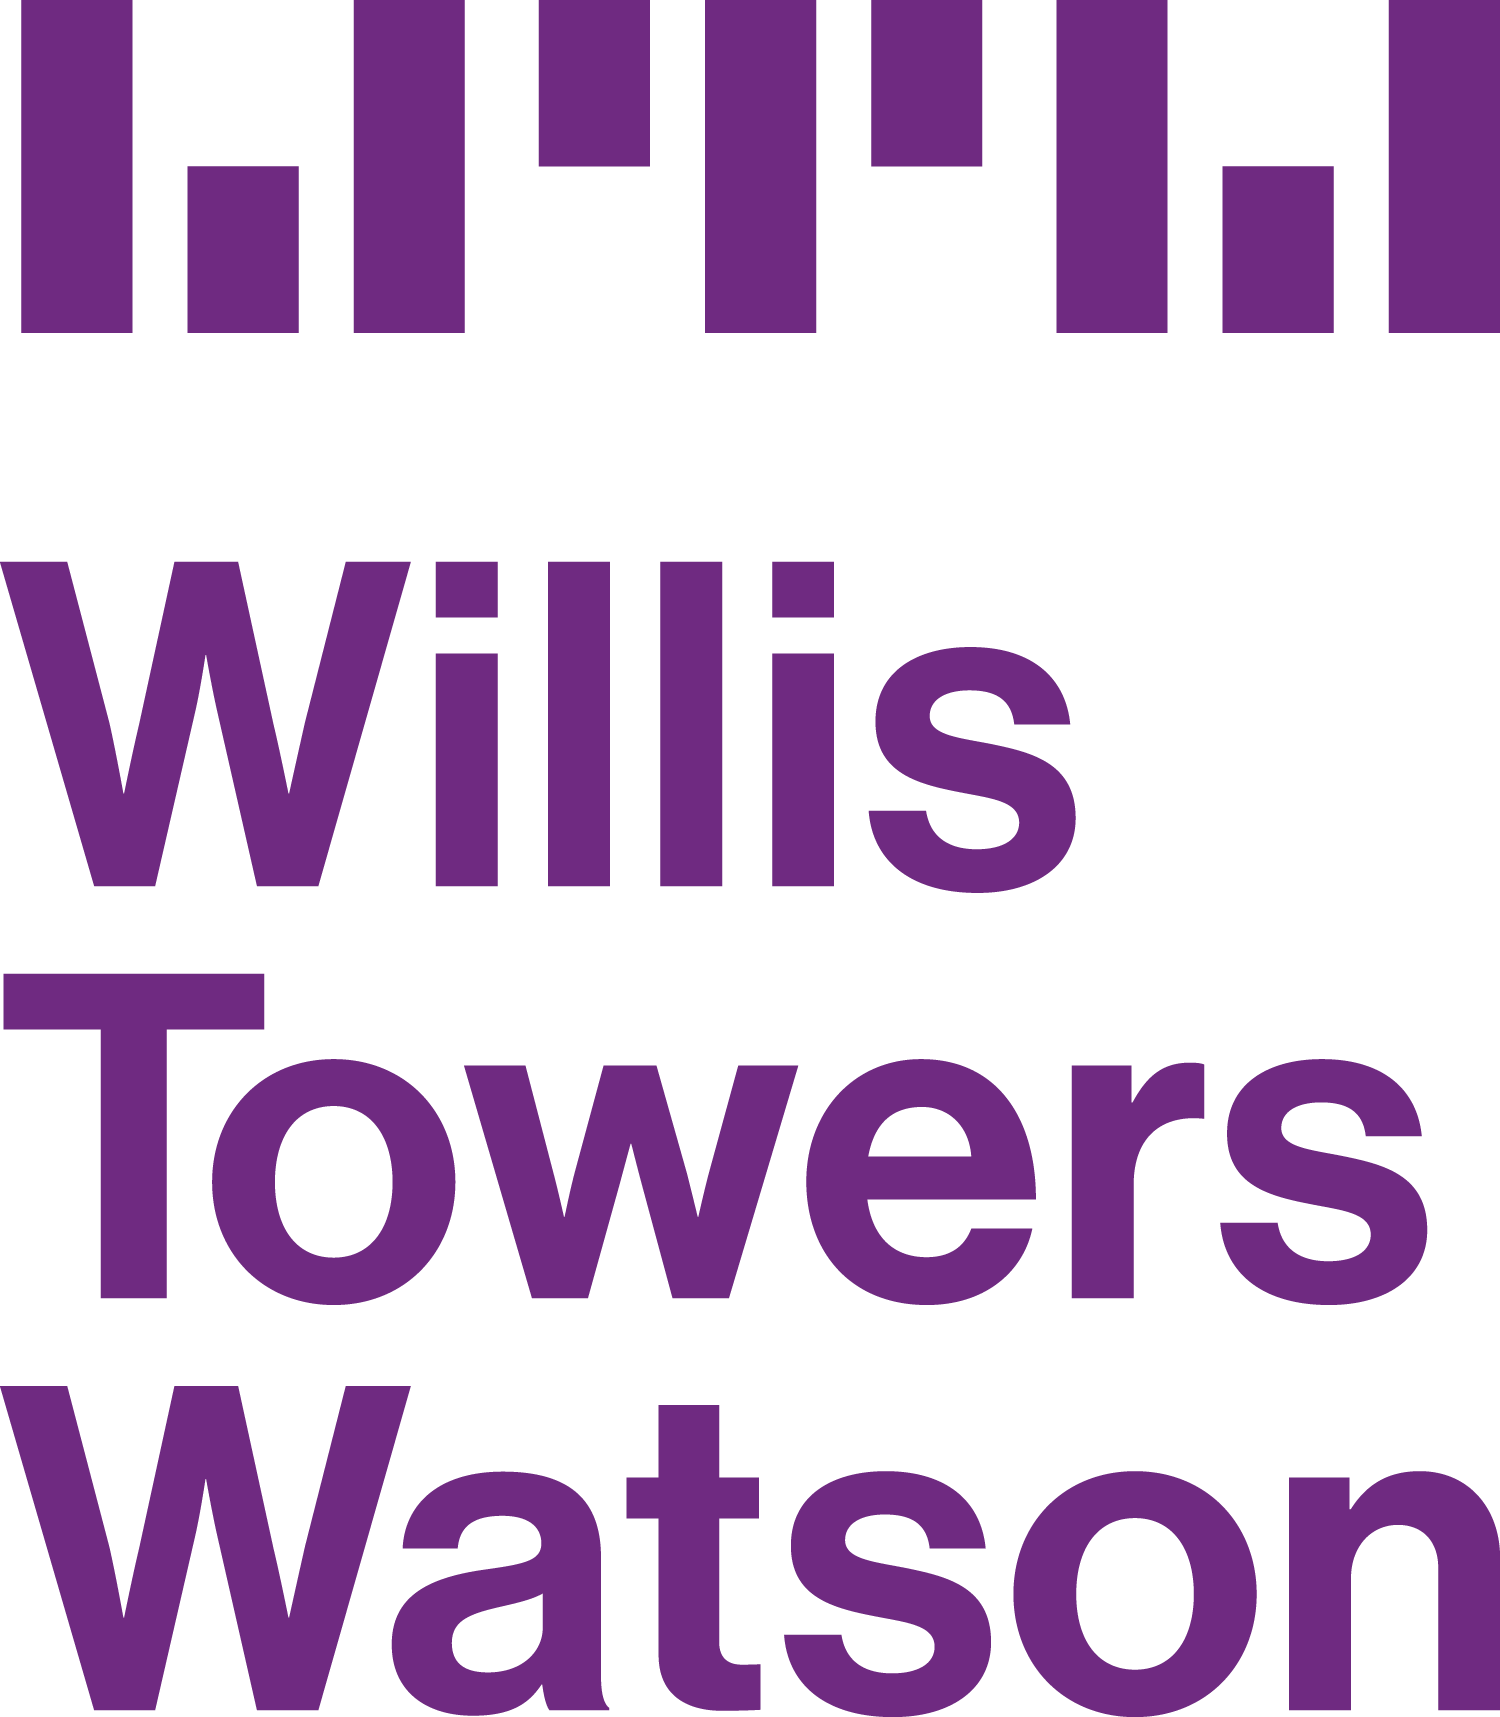 saig Willis Tower Watson